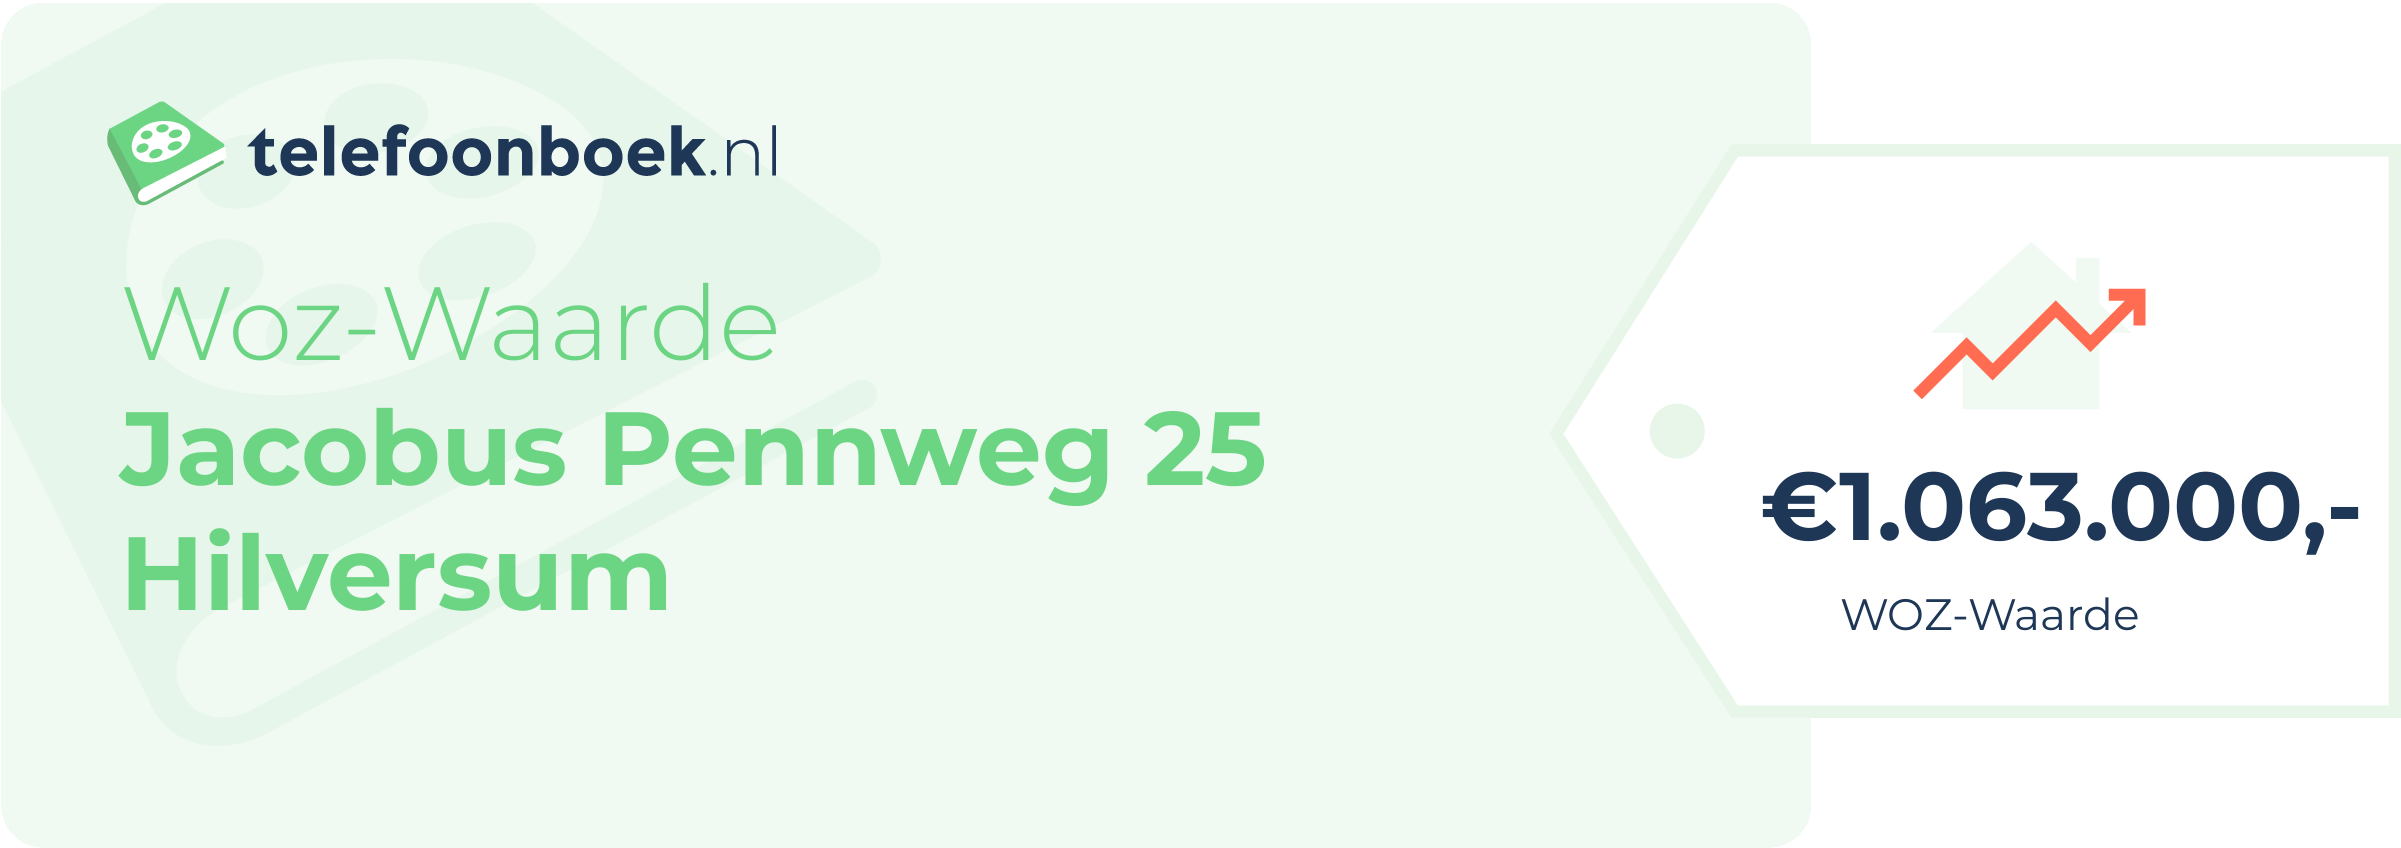 WOZ-waarde Jacobus Pennweg 25 Hilversum